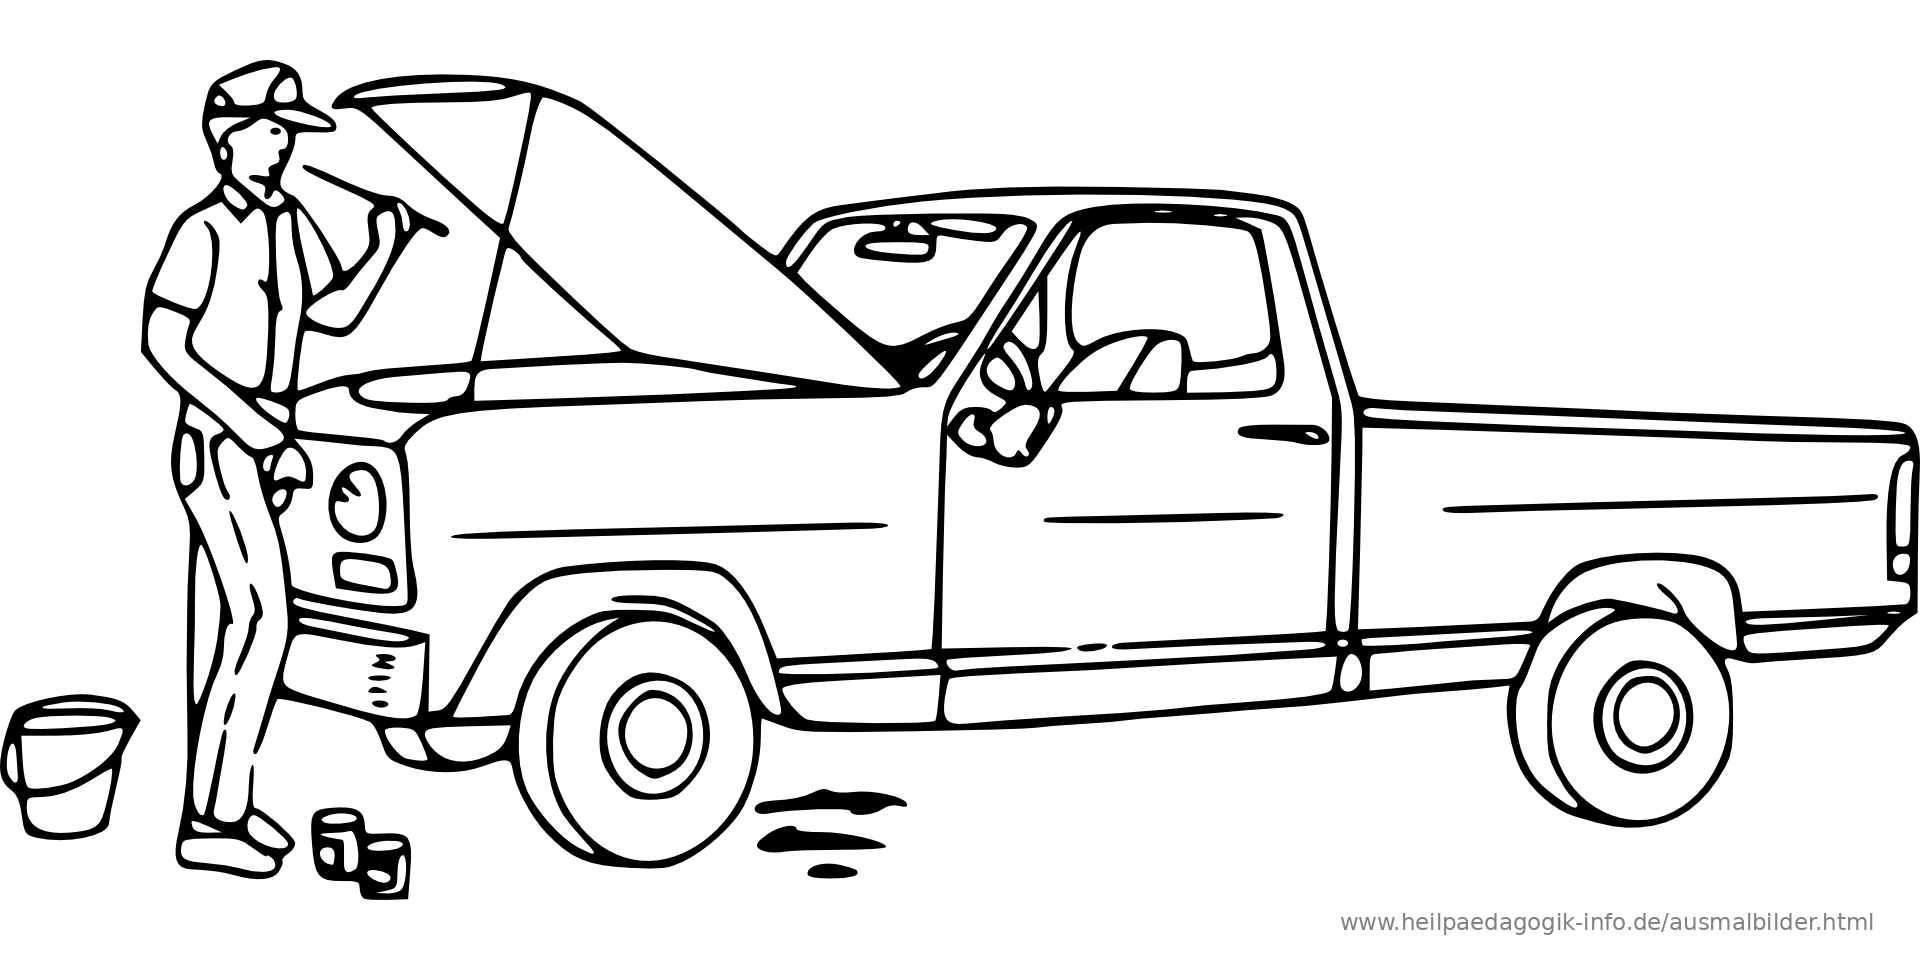 Malvorlagen Auto Kostenlos Ausdrucken Test - Kinder zeichnen und ausmalen